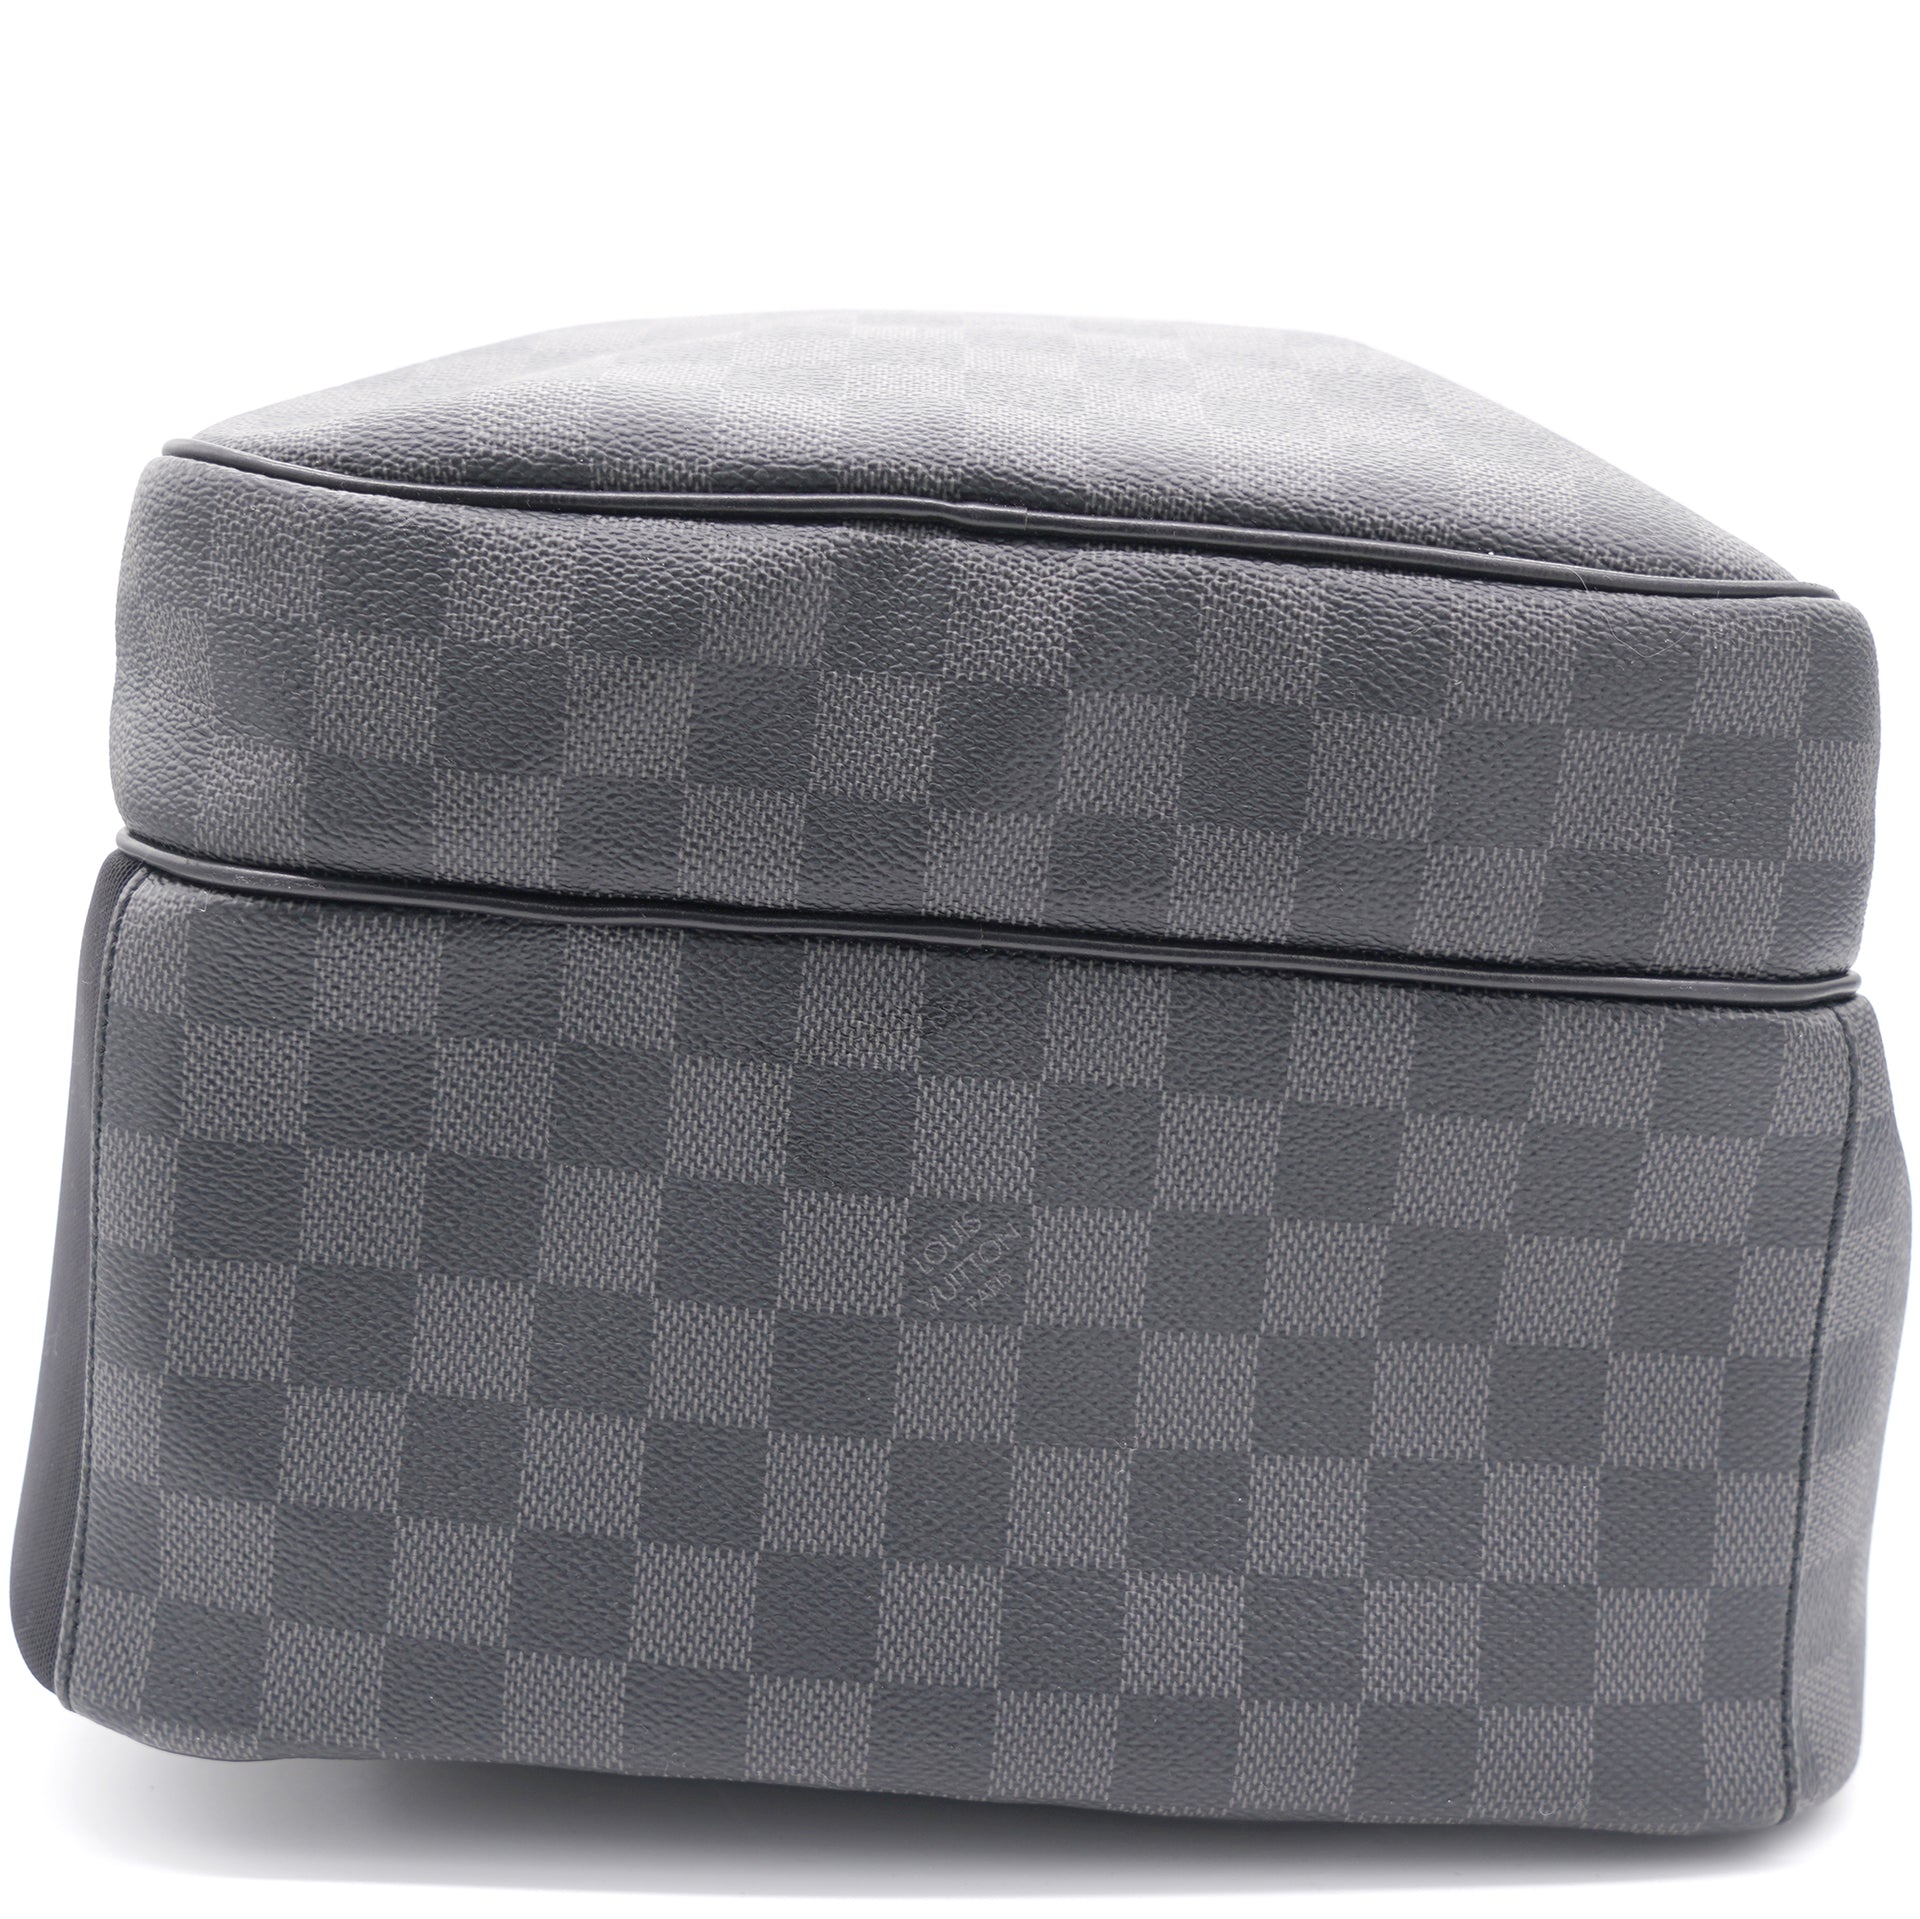 Louis Vuitton Michael Backpack Black Canvas Damier Graphite